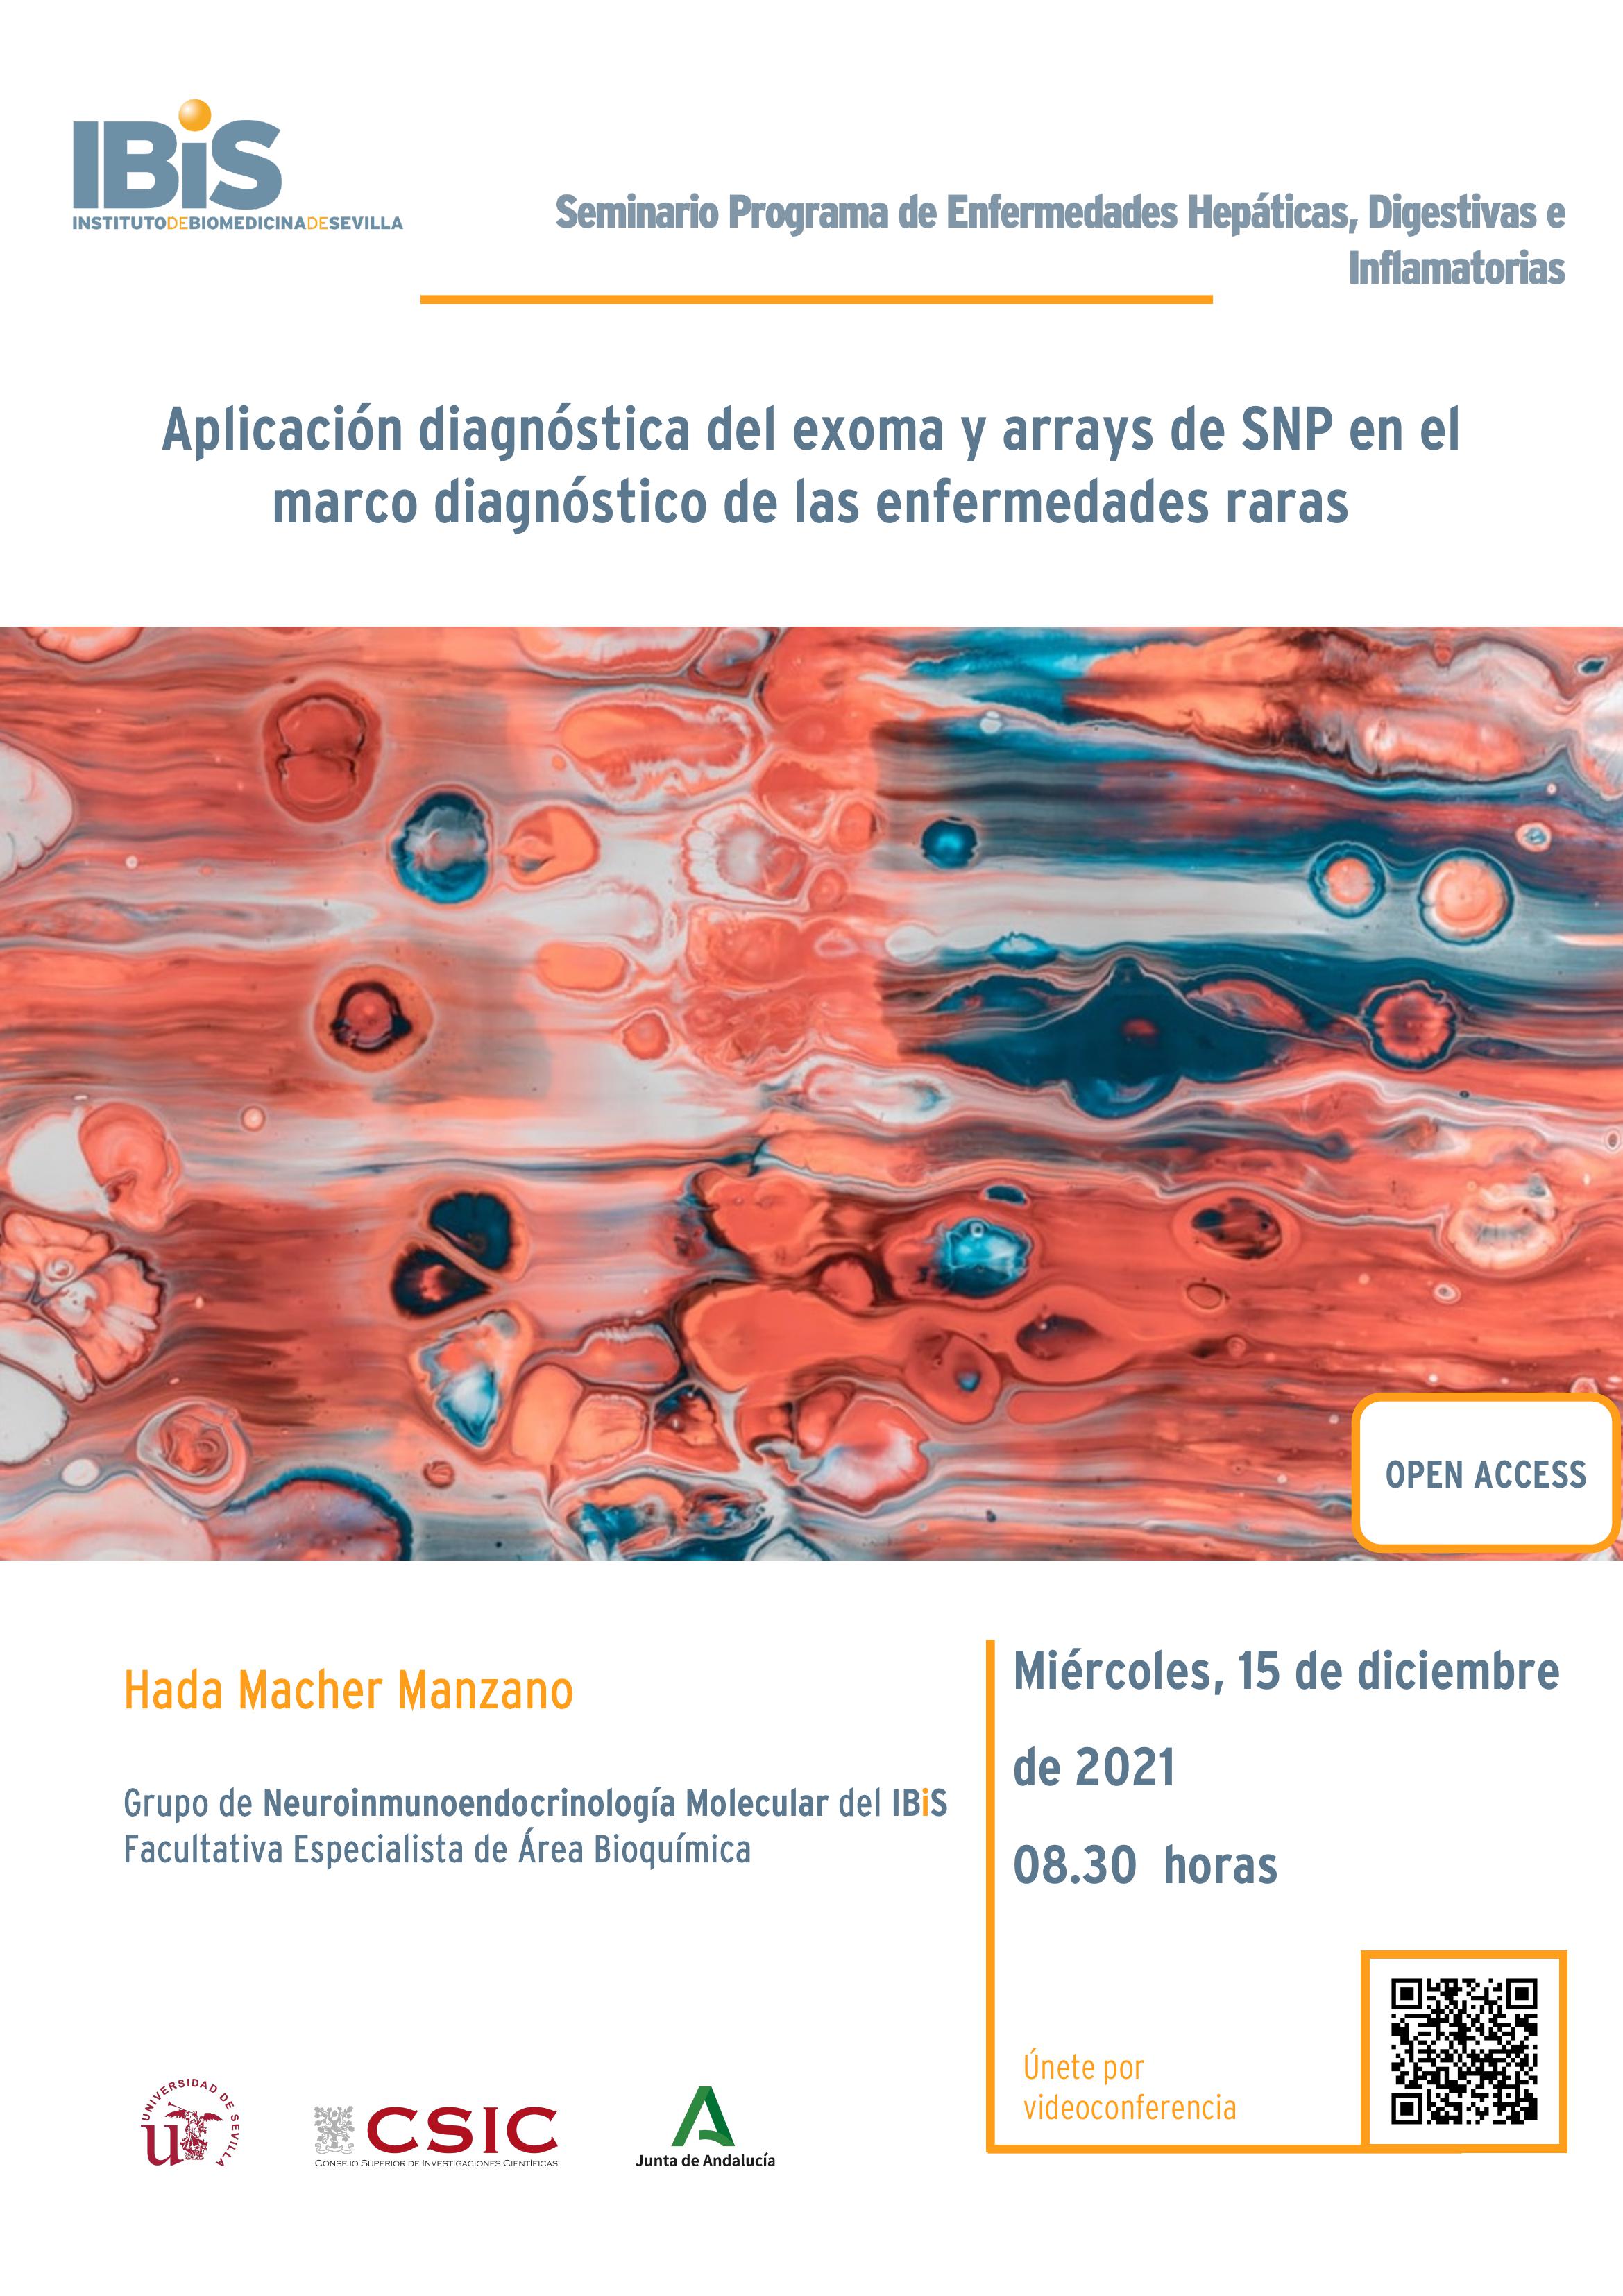 Poster: Aplicación diagnóstica del exoma y arrays de SNP en el marco diagnóstico de las enfermedades raras